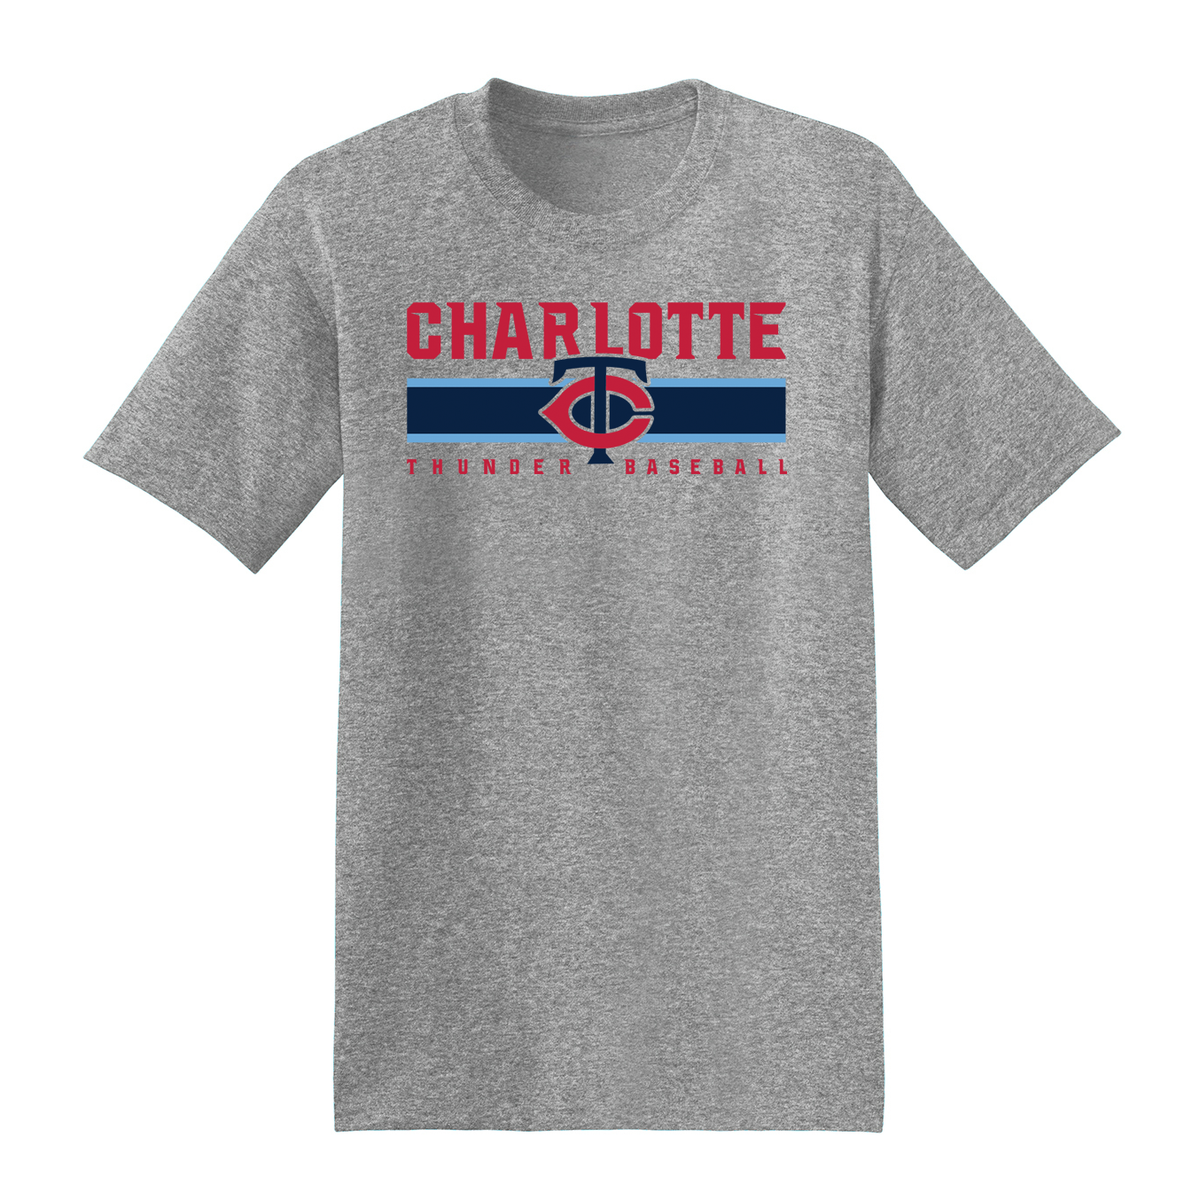 Charlotte Thunder Baseball  T-Shirt